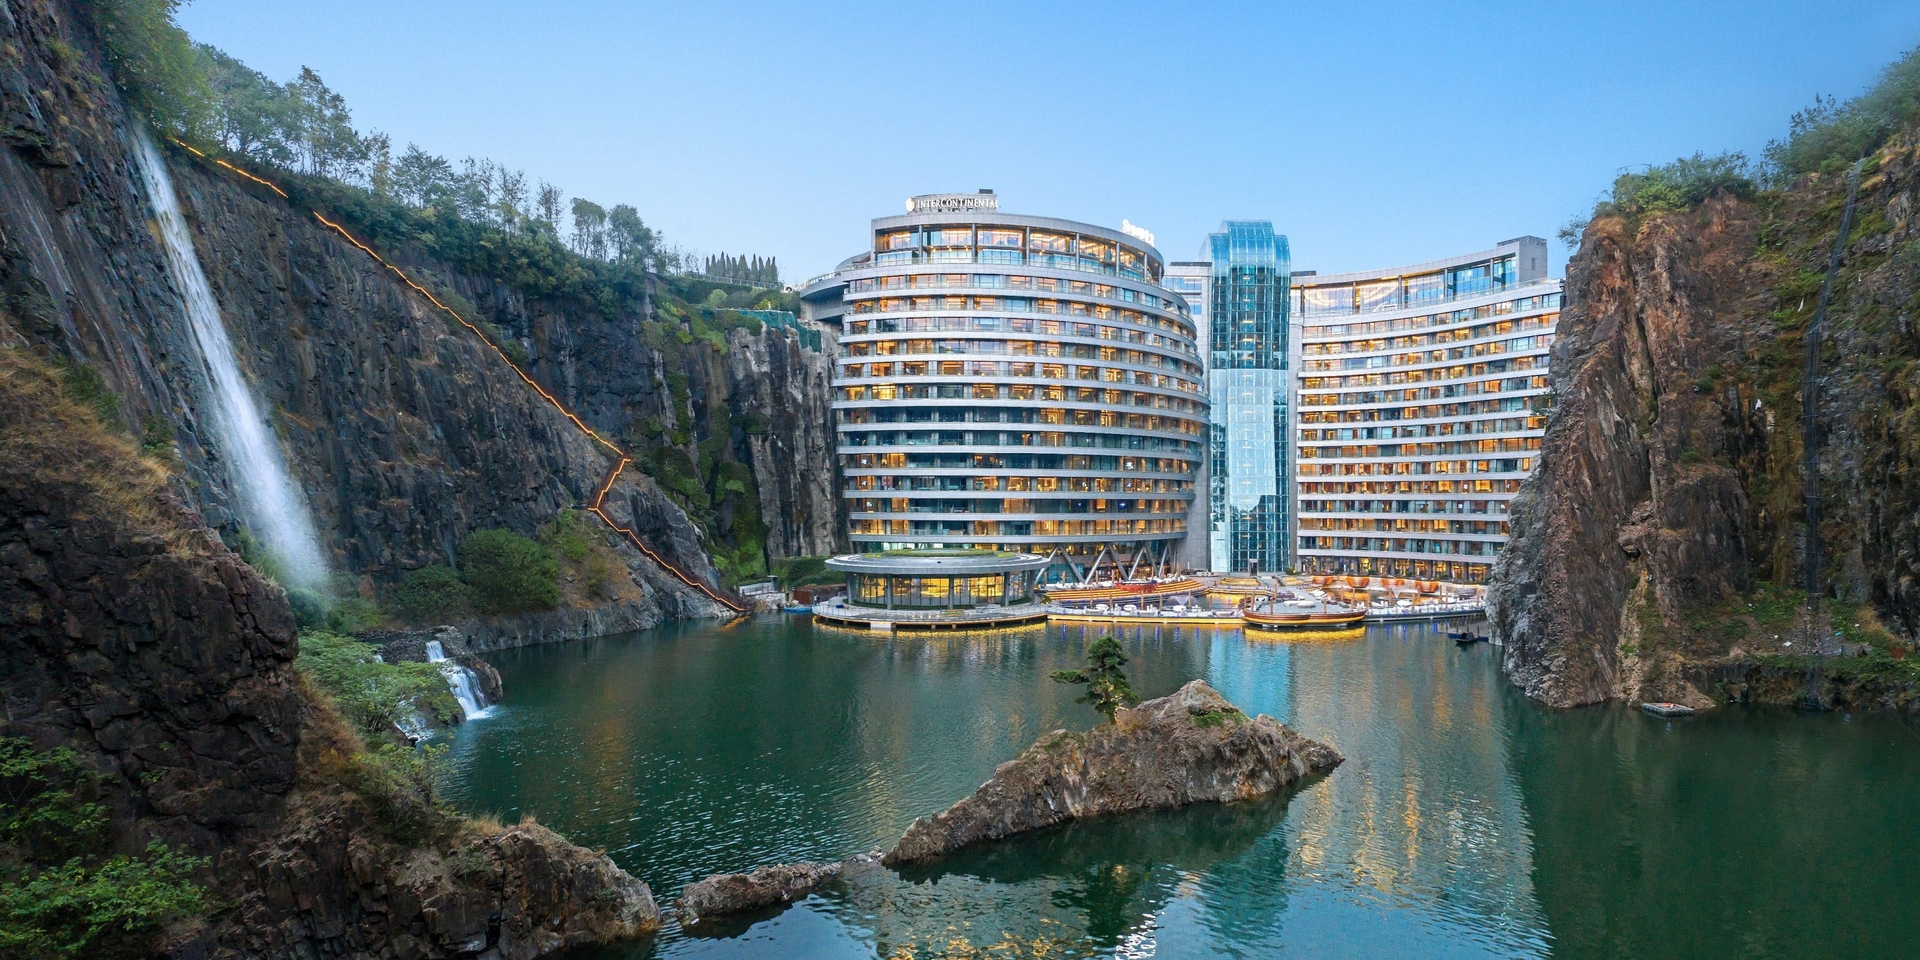 Khách sạn dưới lòng đất đầu tiên trên thế giới - InterContinental Shanghai Wonderland. Ảnh: IHG® Hotels & Resorts.